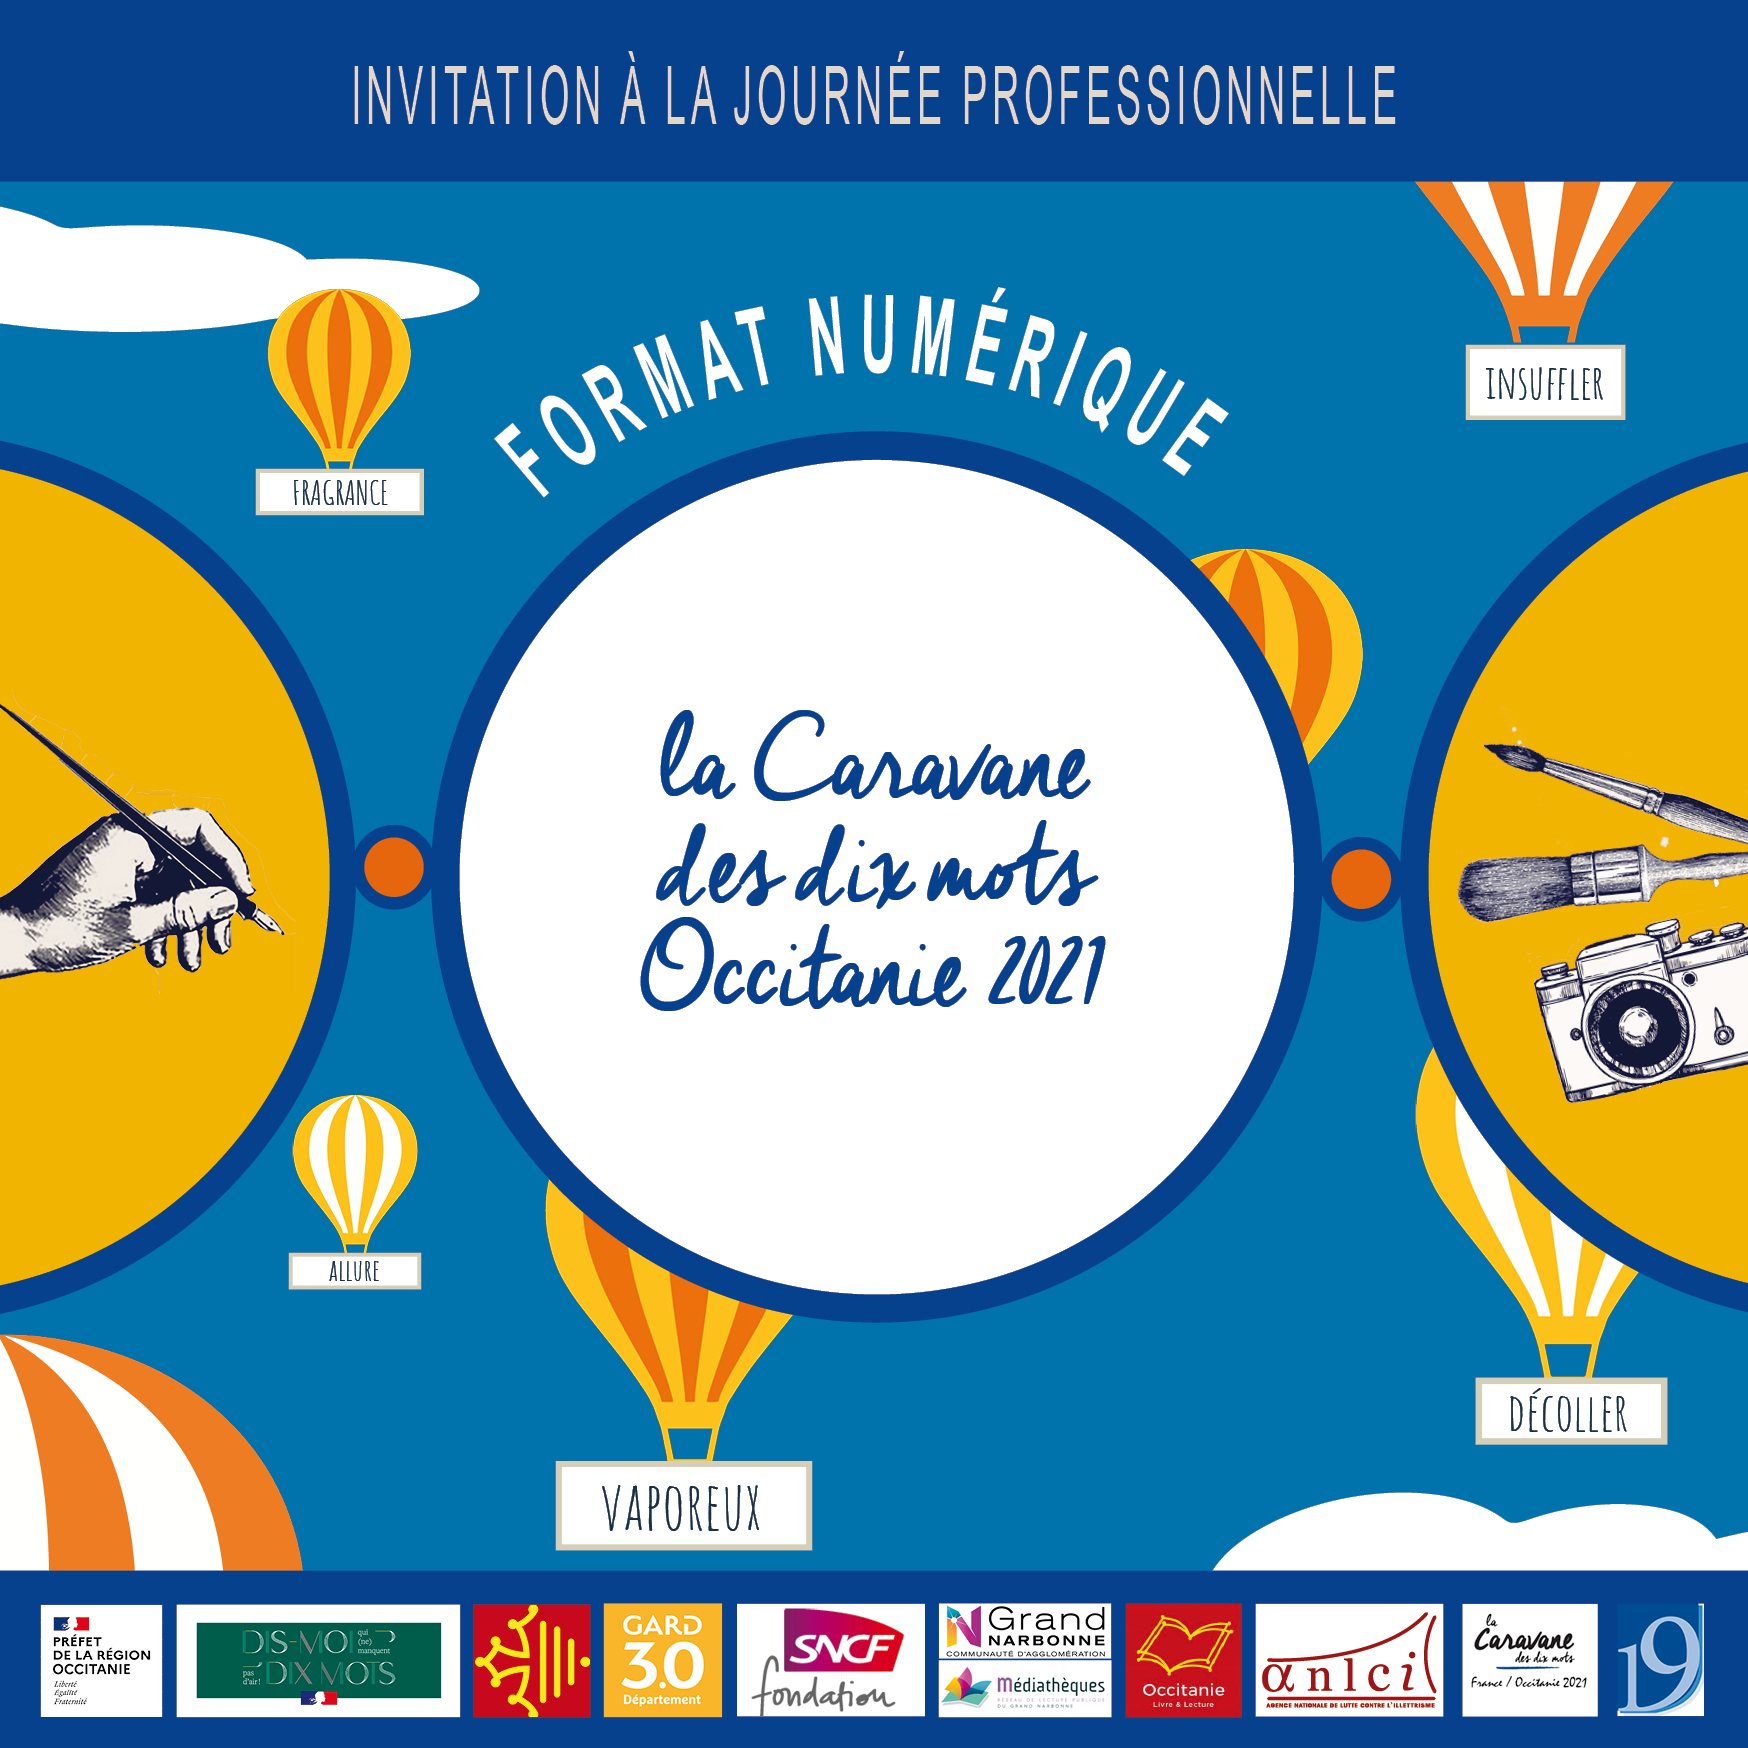 La Journée professionnelle de la Caravane des dix mots Occitanie 2021 se déroulera à distance le 25 mars 2021